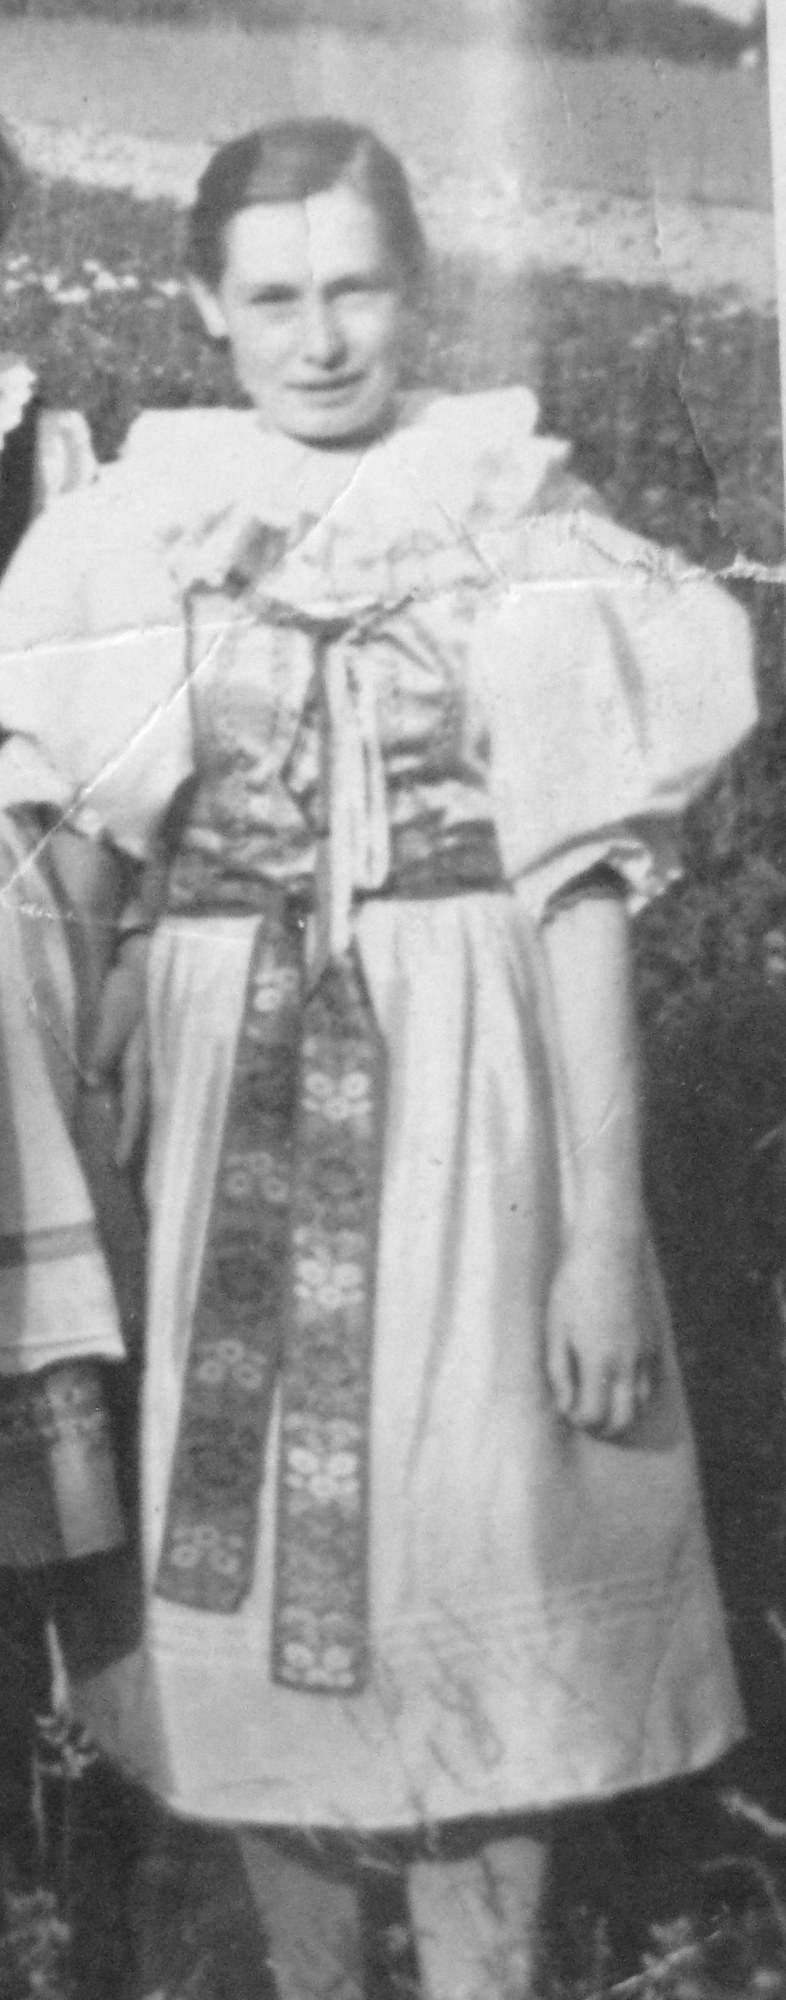 Marií Bednaříkovou v hanáckém kroji .JPG (historic)